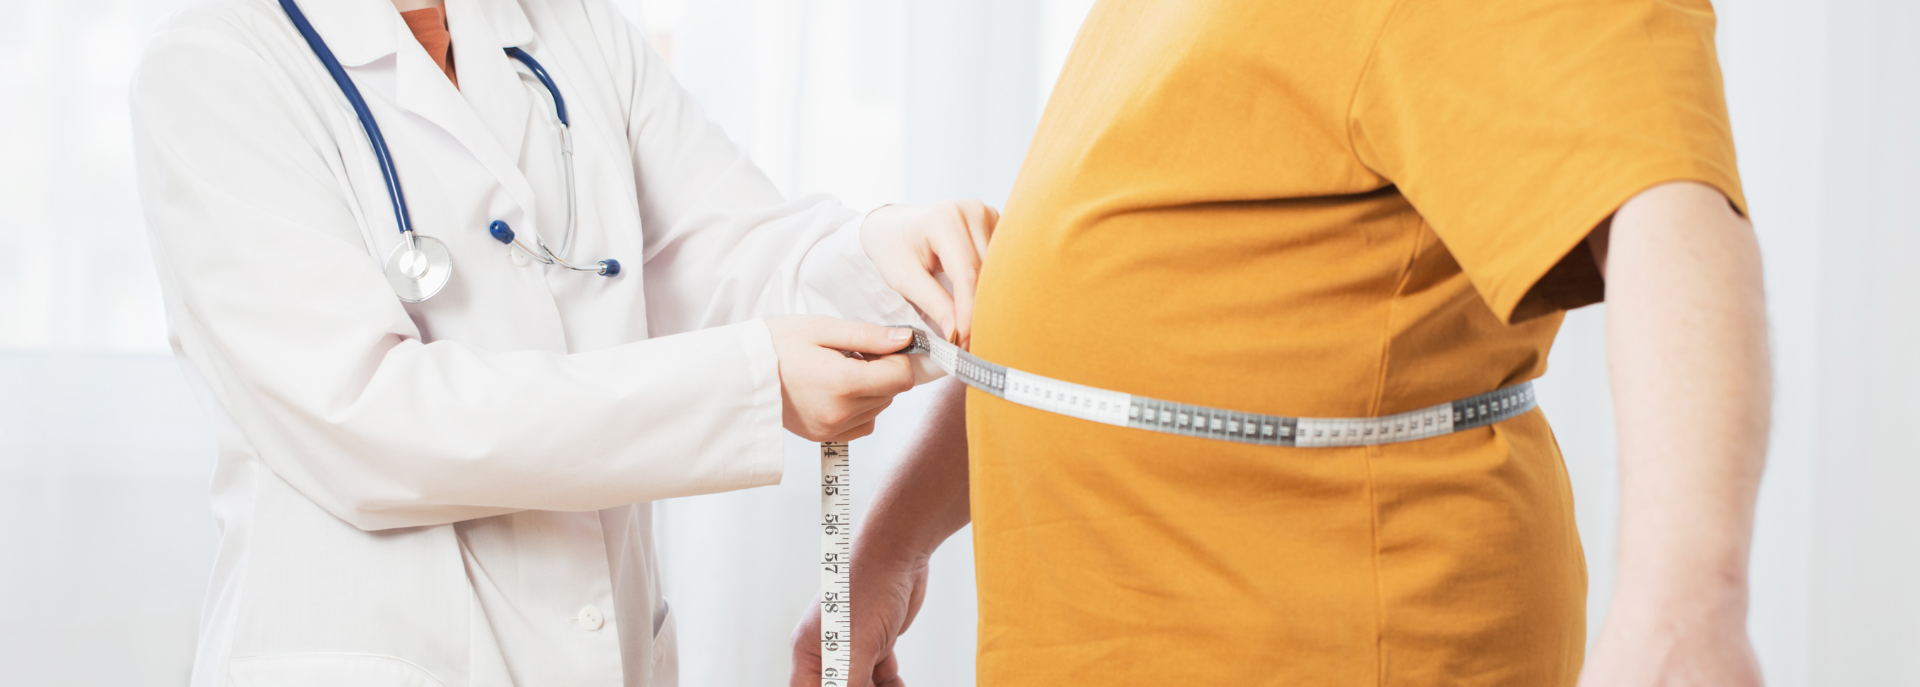 Obesità grave: come si misura, cause, rischi e cura